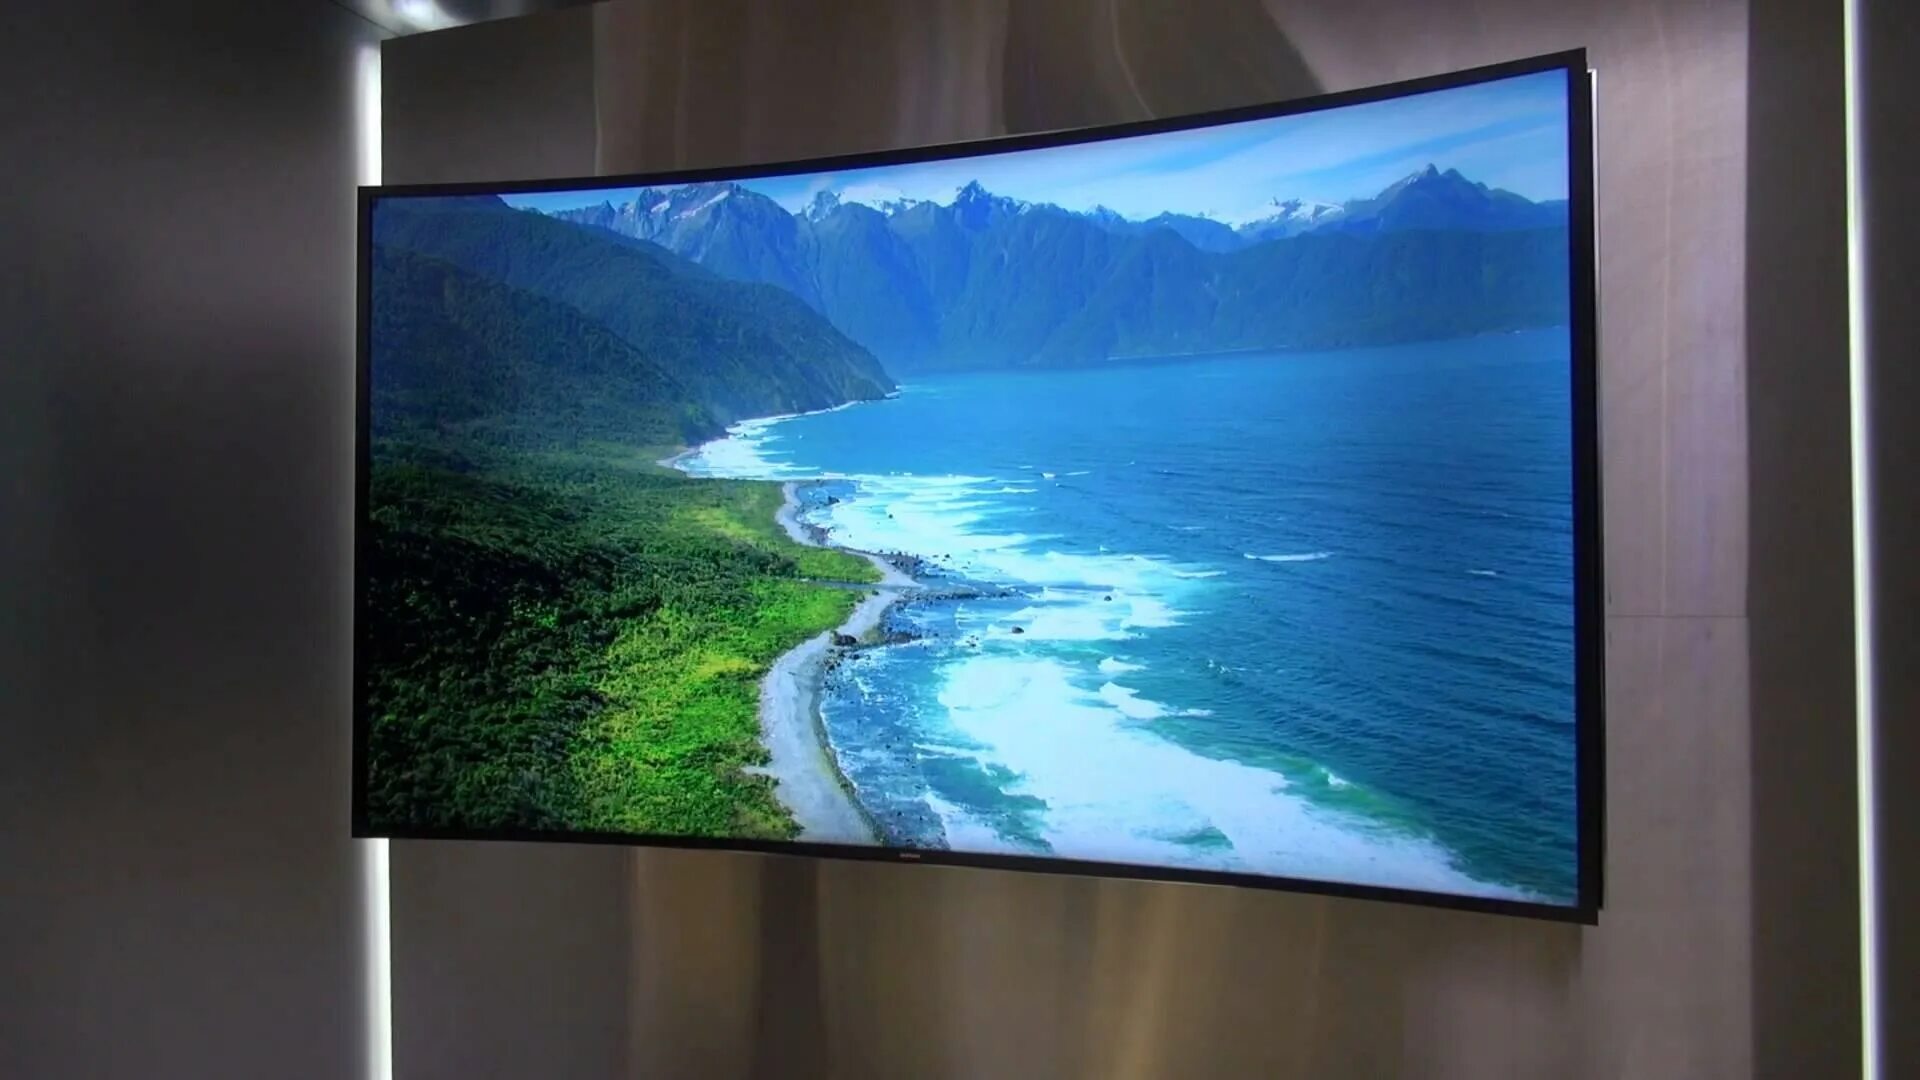 Телевизоры диагональ 1 метр. Самсунг олед. Samsung OLED TV. Samsung 58 дюймов плазма. LG телевизор 65 дюймов плазма.